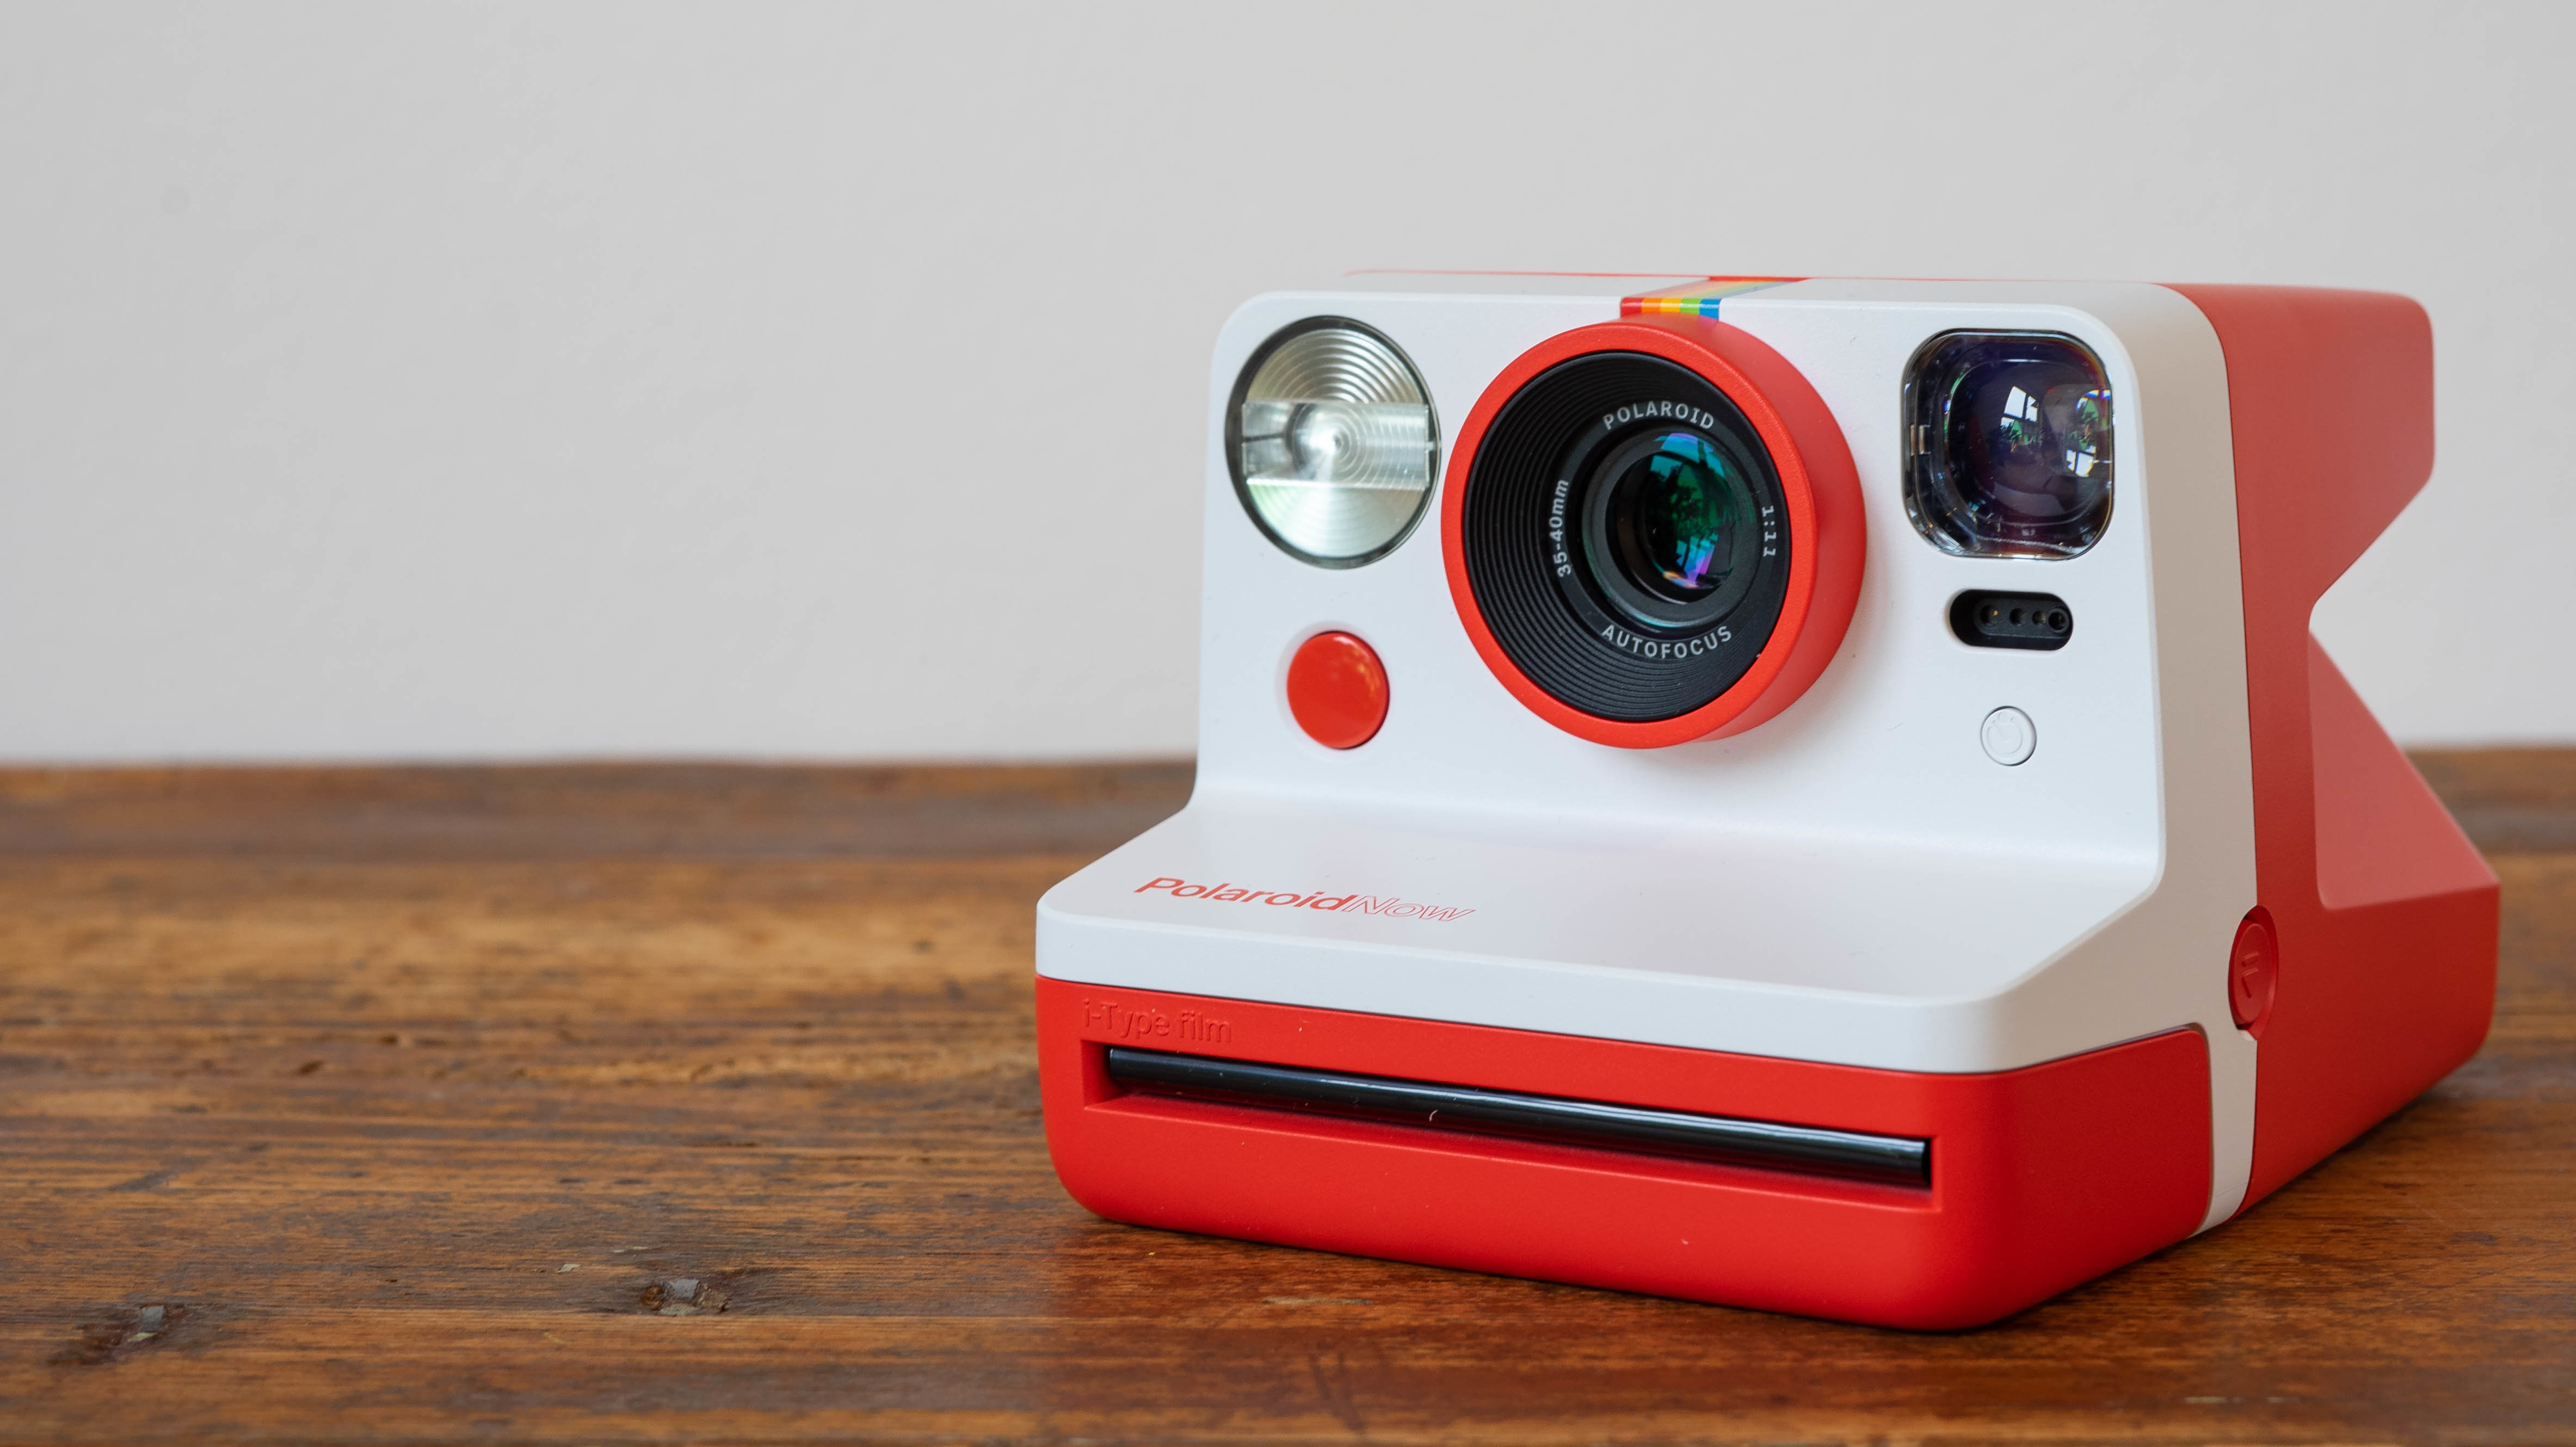 Sofortbildkamera Polaroid Now im Test: Klassiker-Spross mit  Doppelbelichtung | heise online